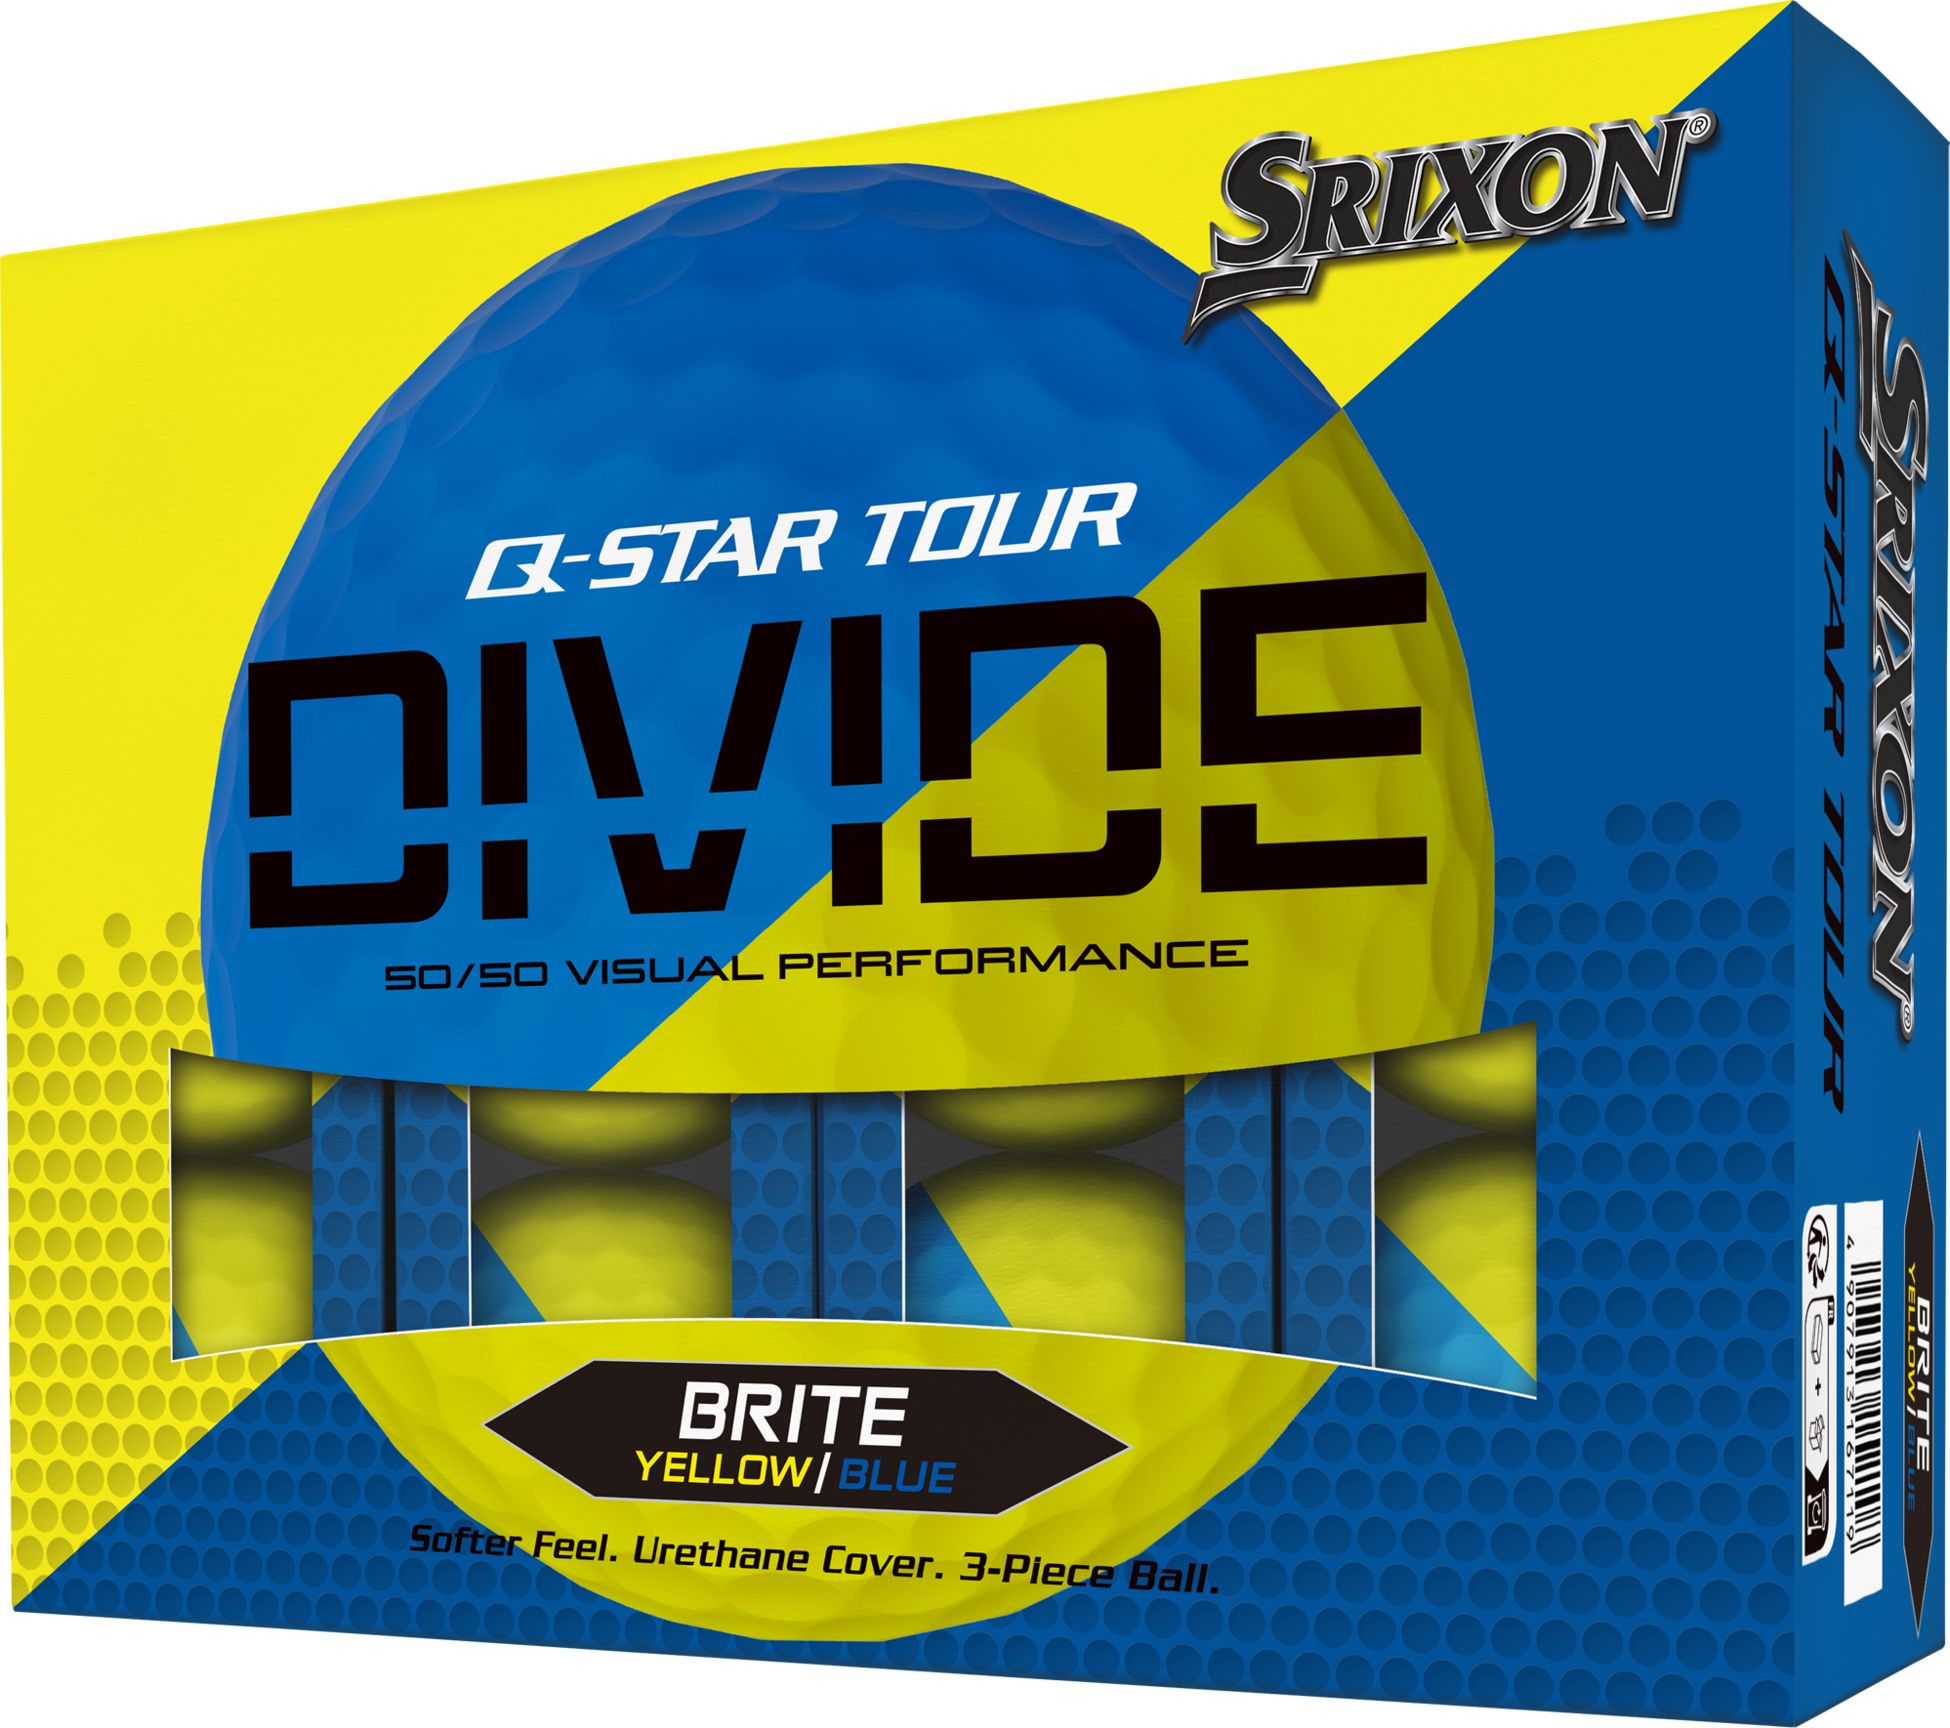 SRIXON, Q-STAR DIVIDE 2 DZ